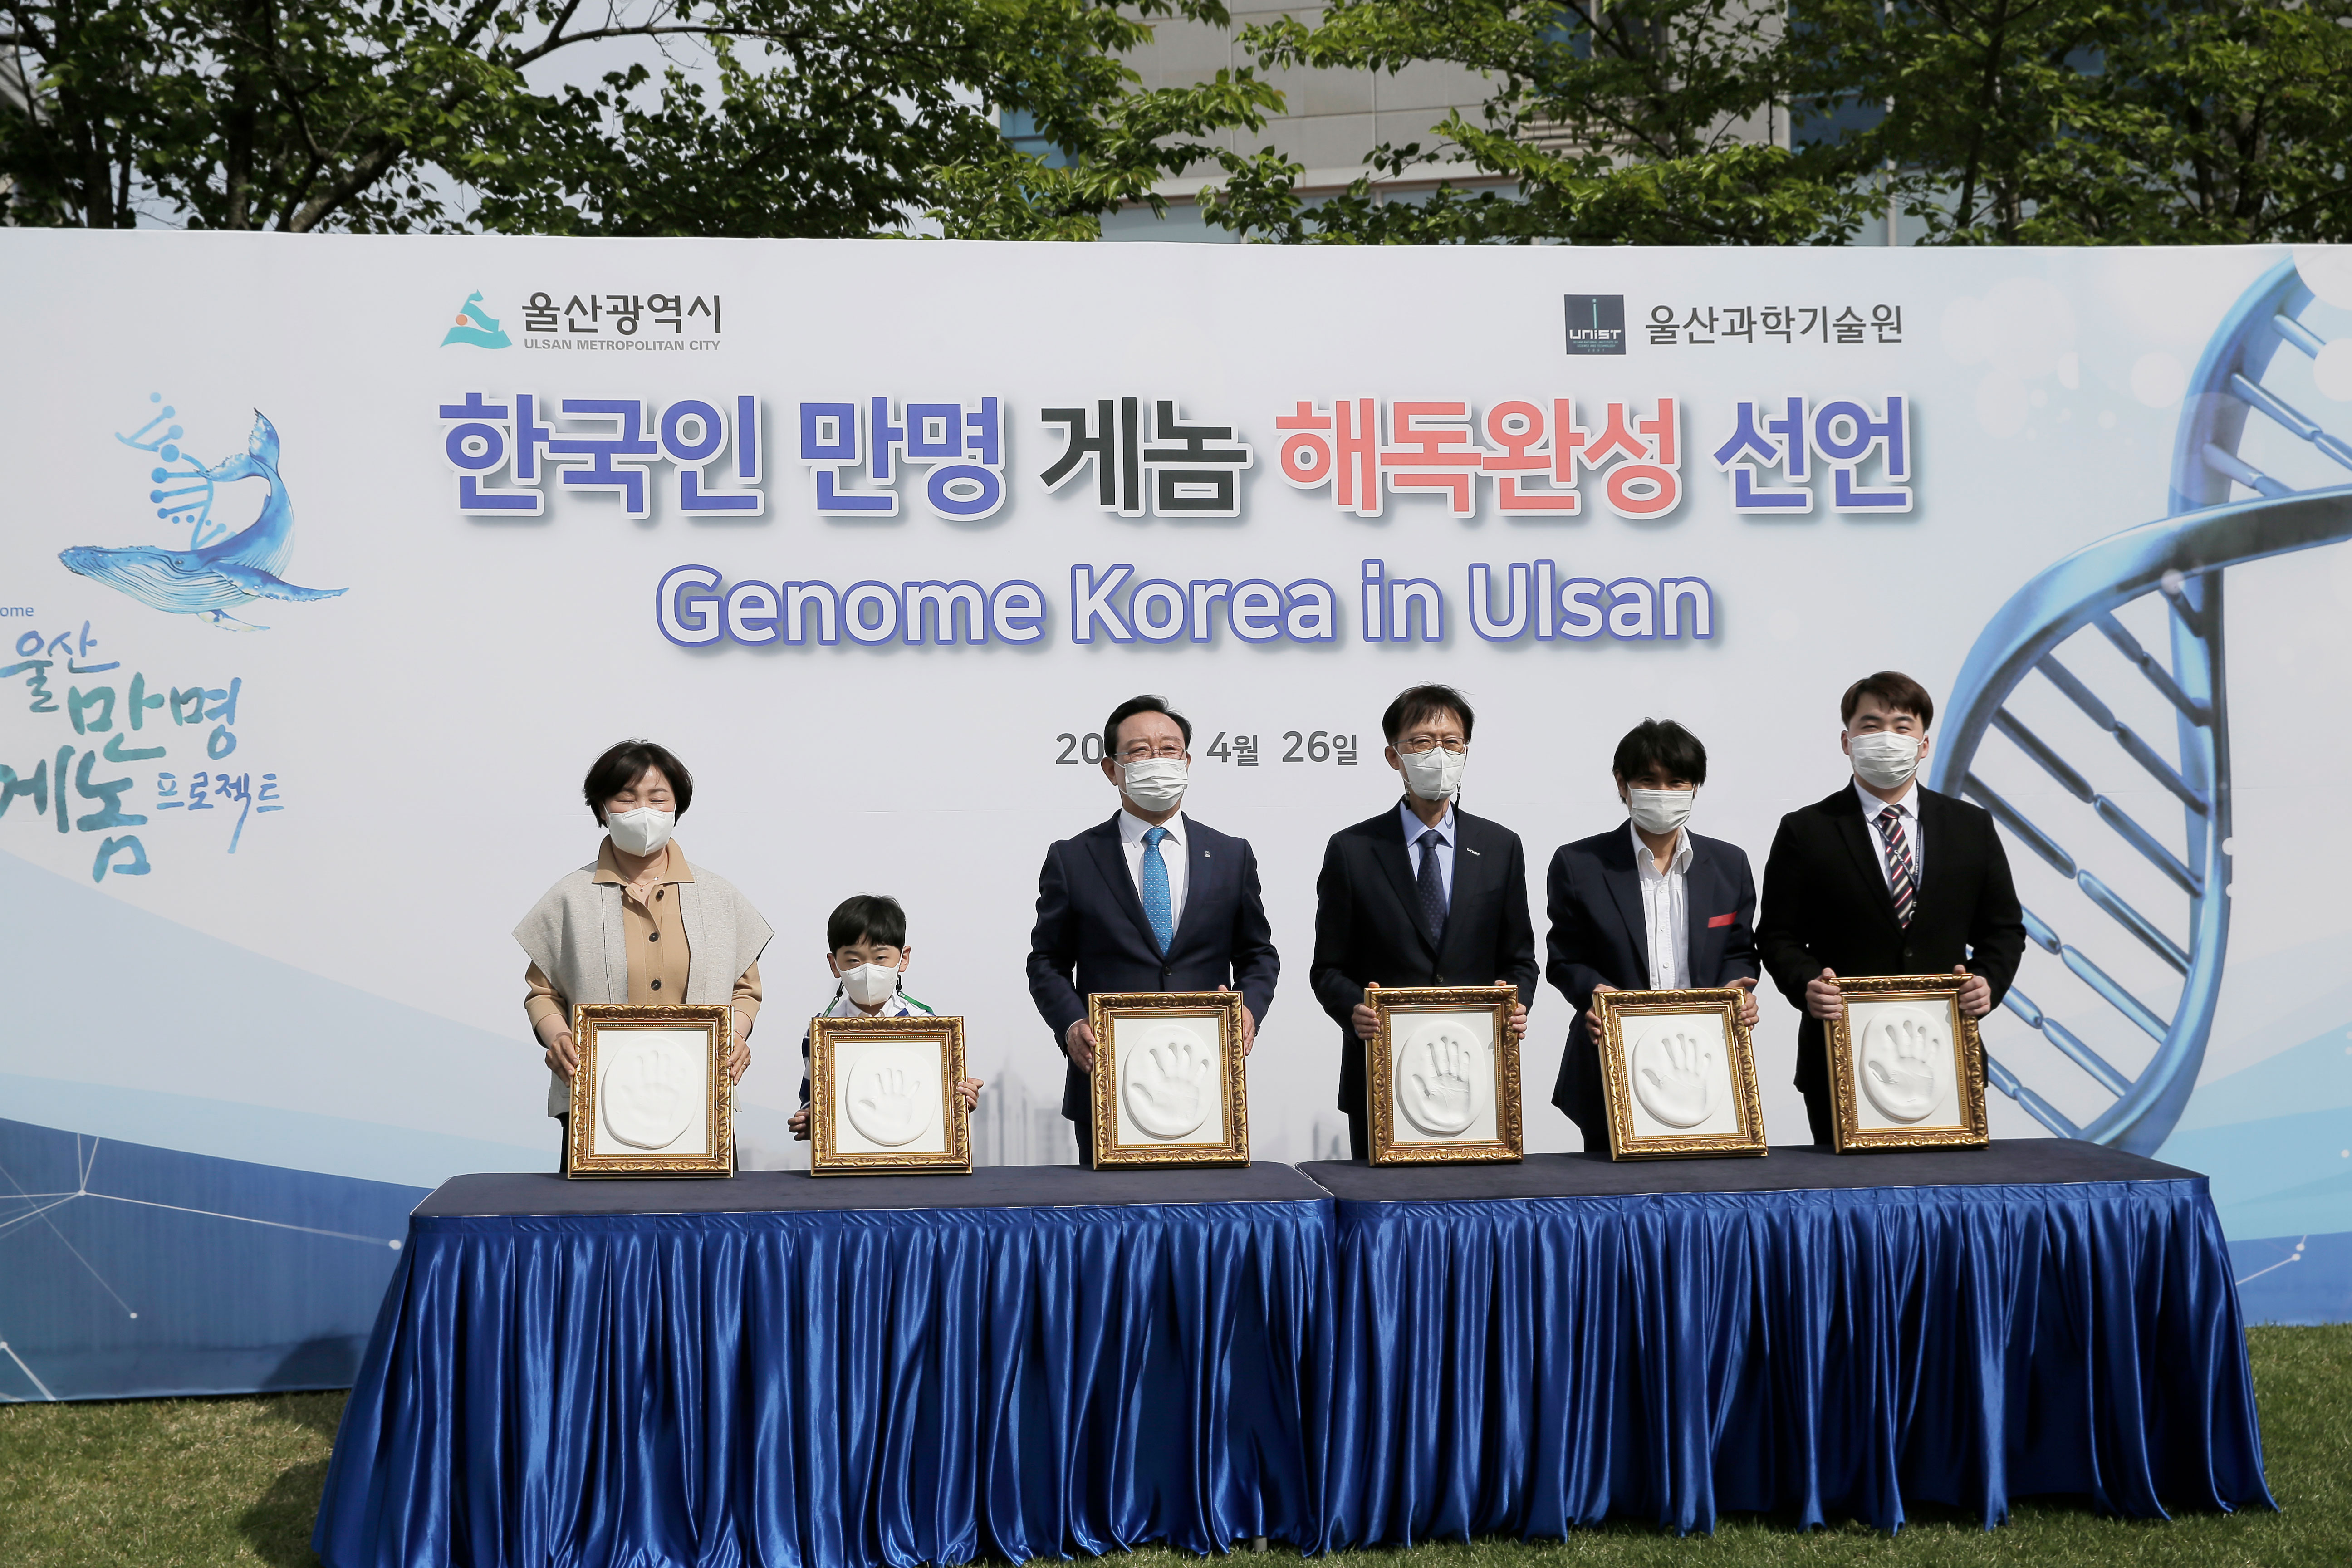 참석자 대표들이 게놈 프로젝트 완료를 기념하는 핸드프린팅을 했다. | 사진: 김경채